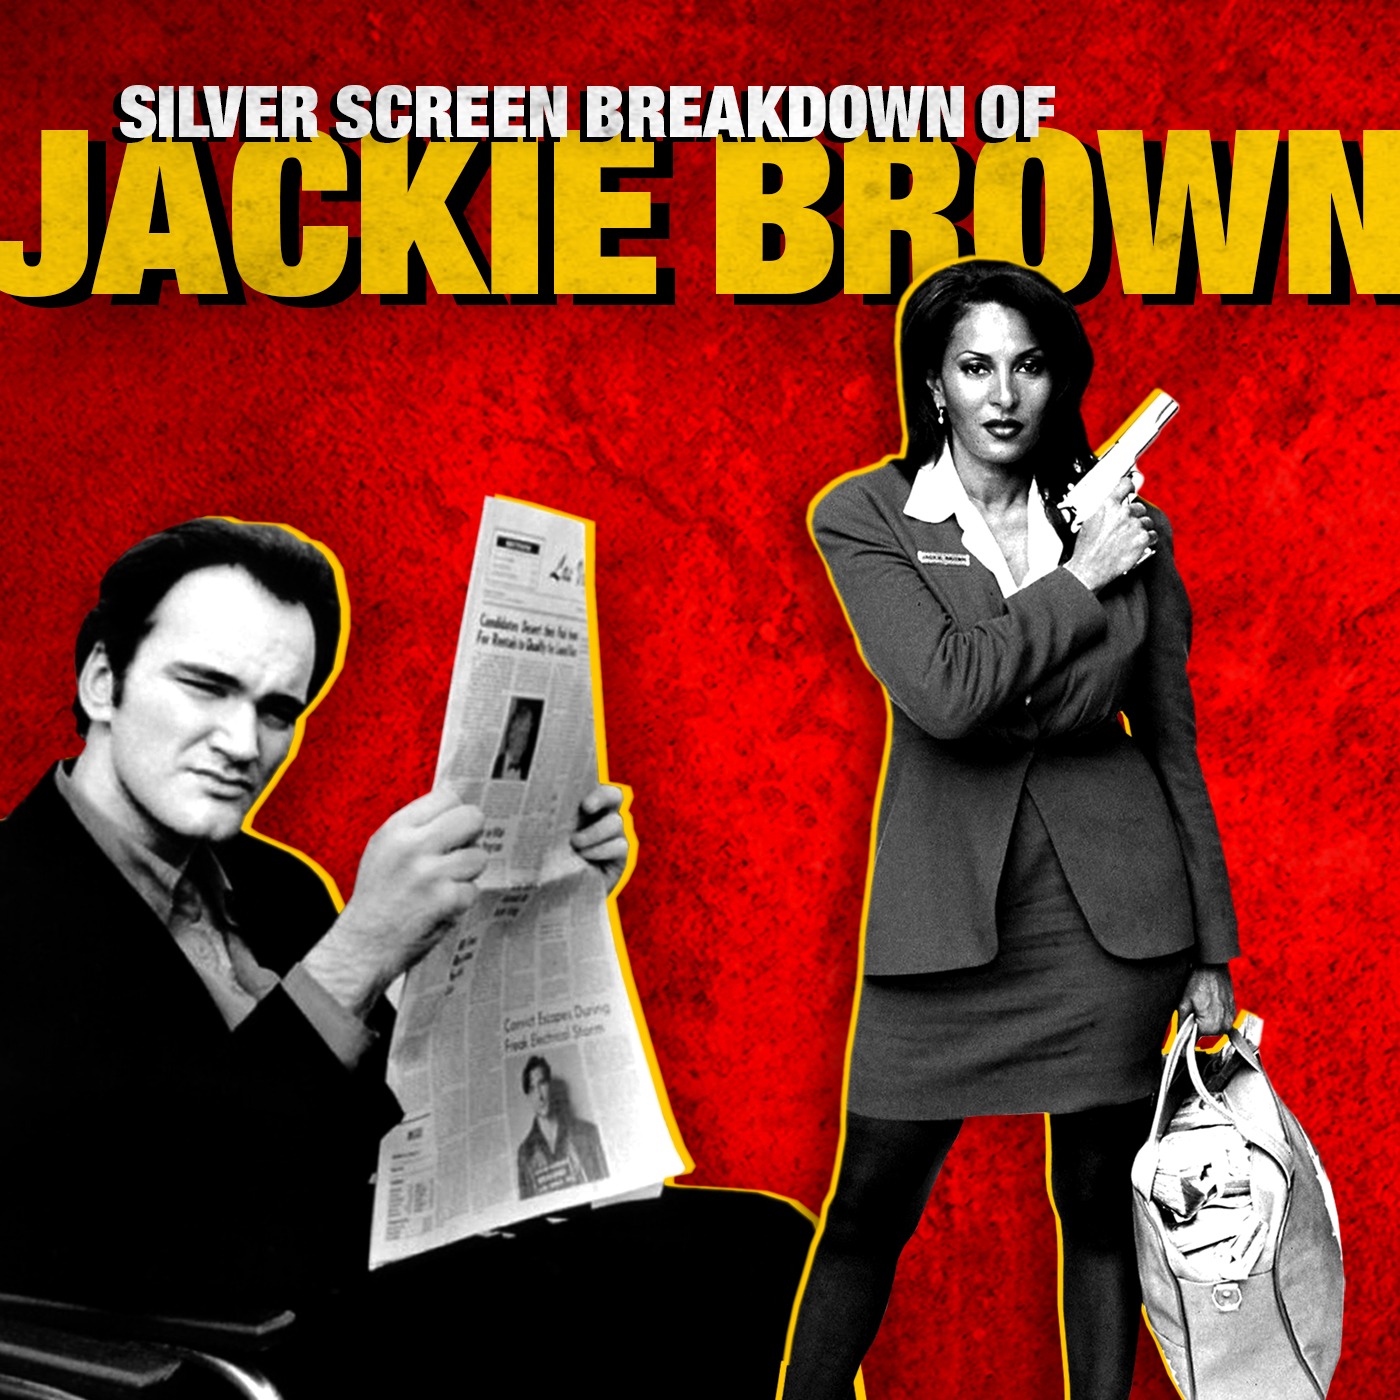 Jackie Brown Film Breakdown | Silver Screen Breakdowns Image